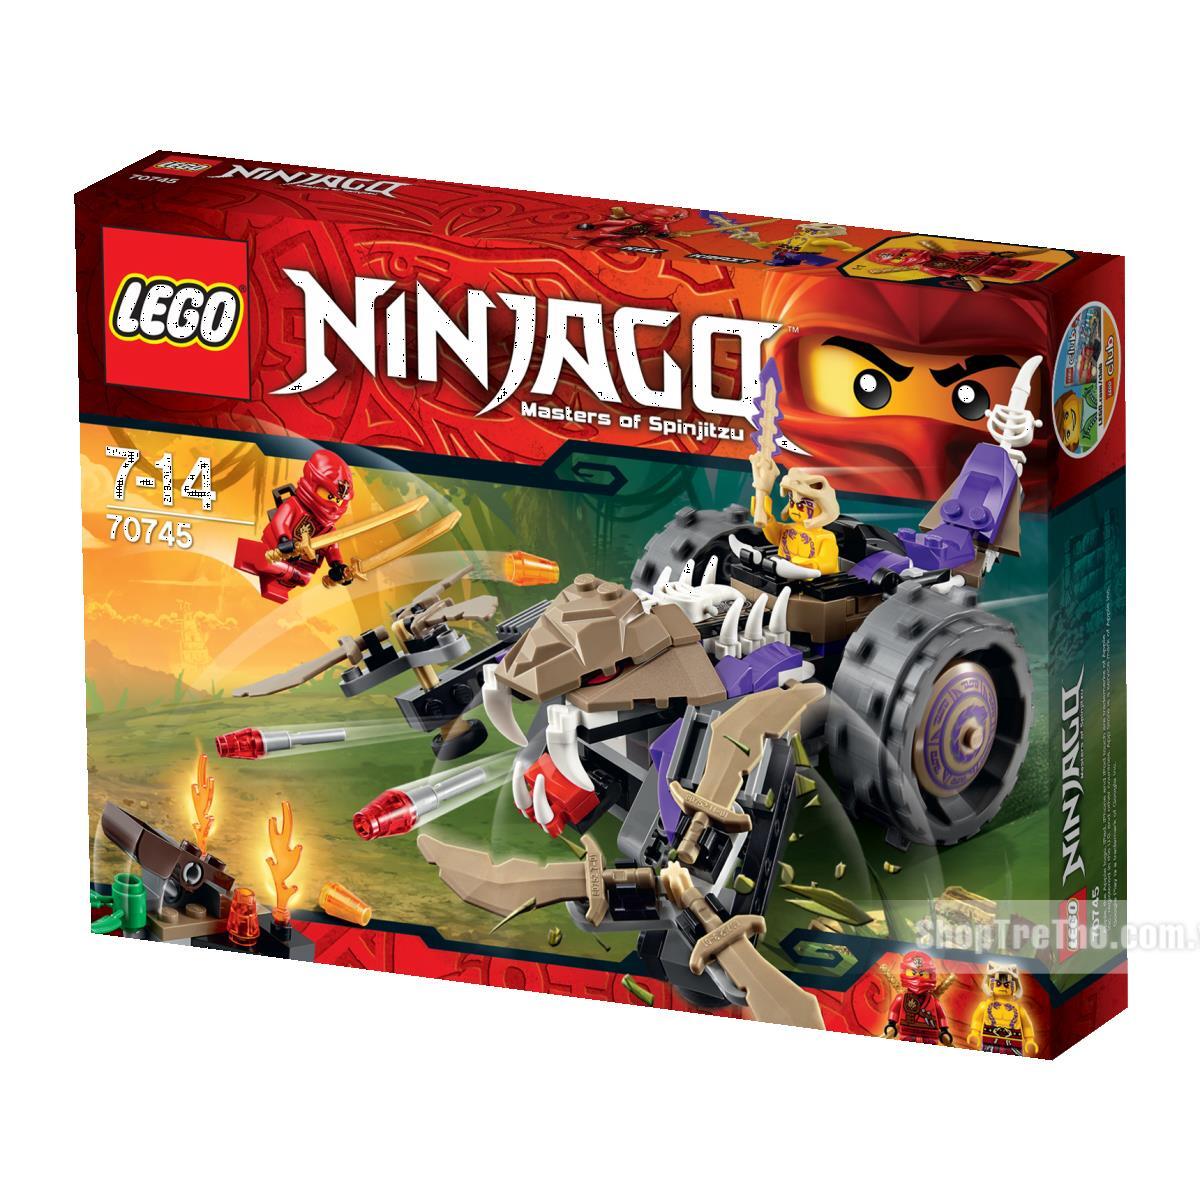 Bộ xếp hình Máy nghiền độc xà Lego Ninjago 70745